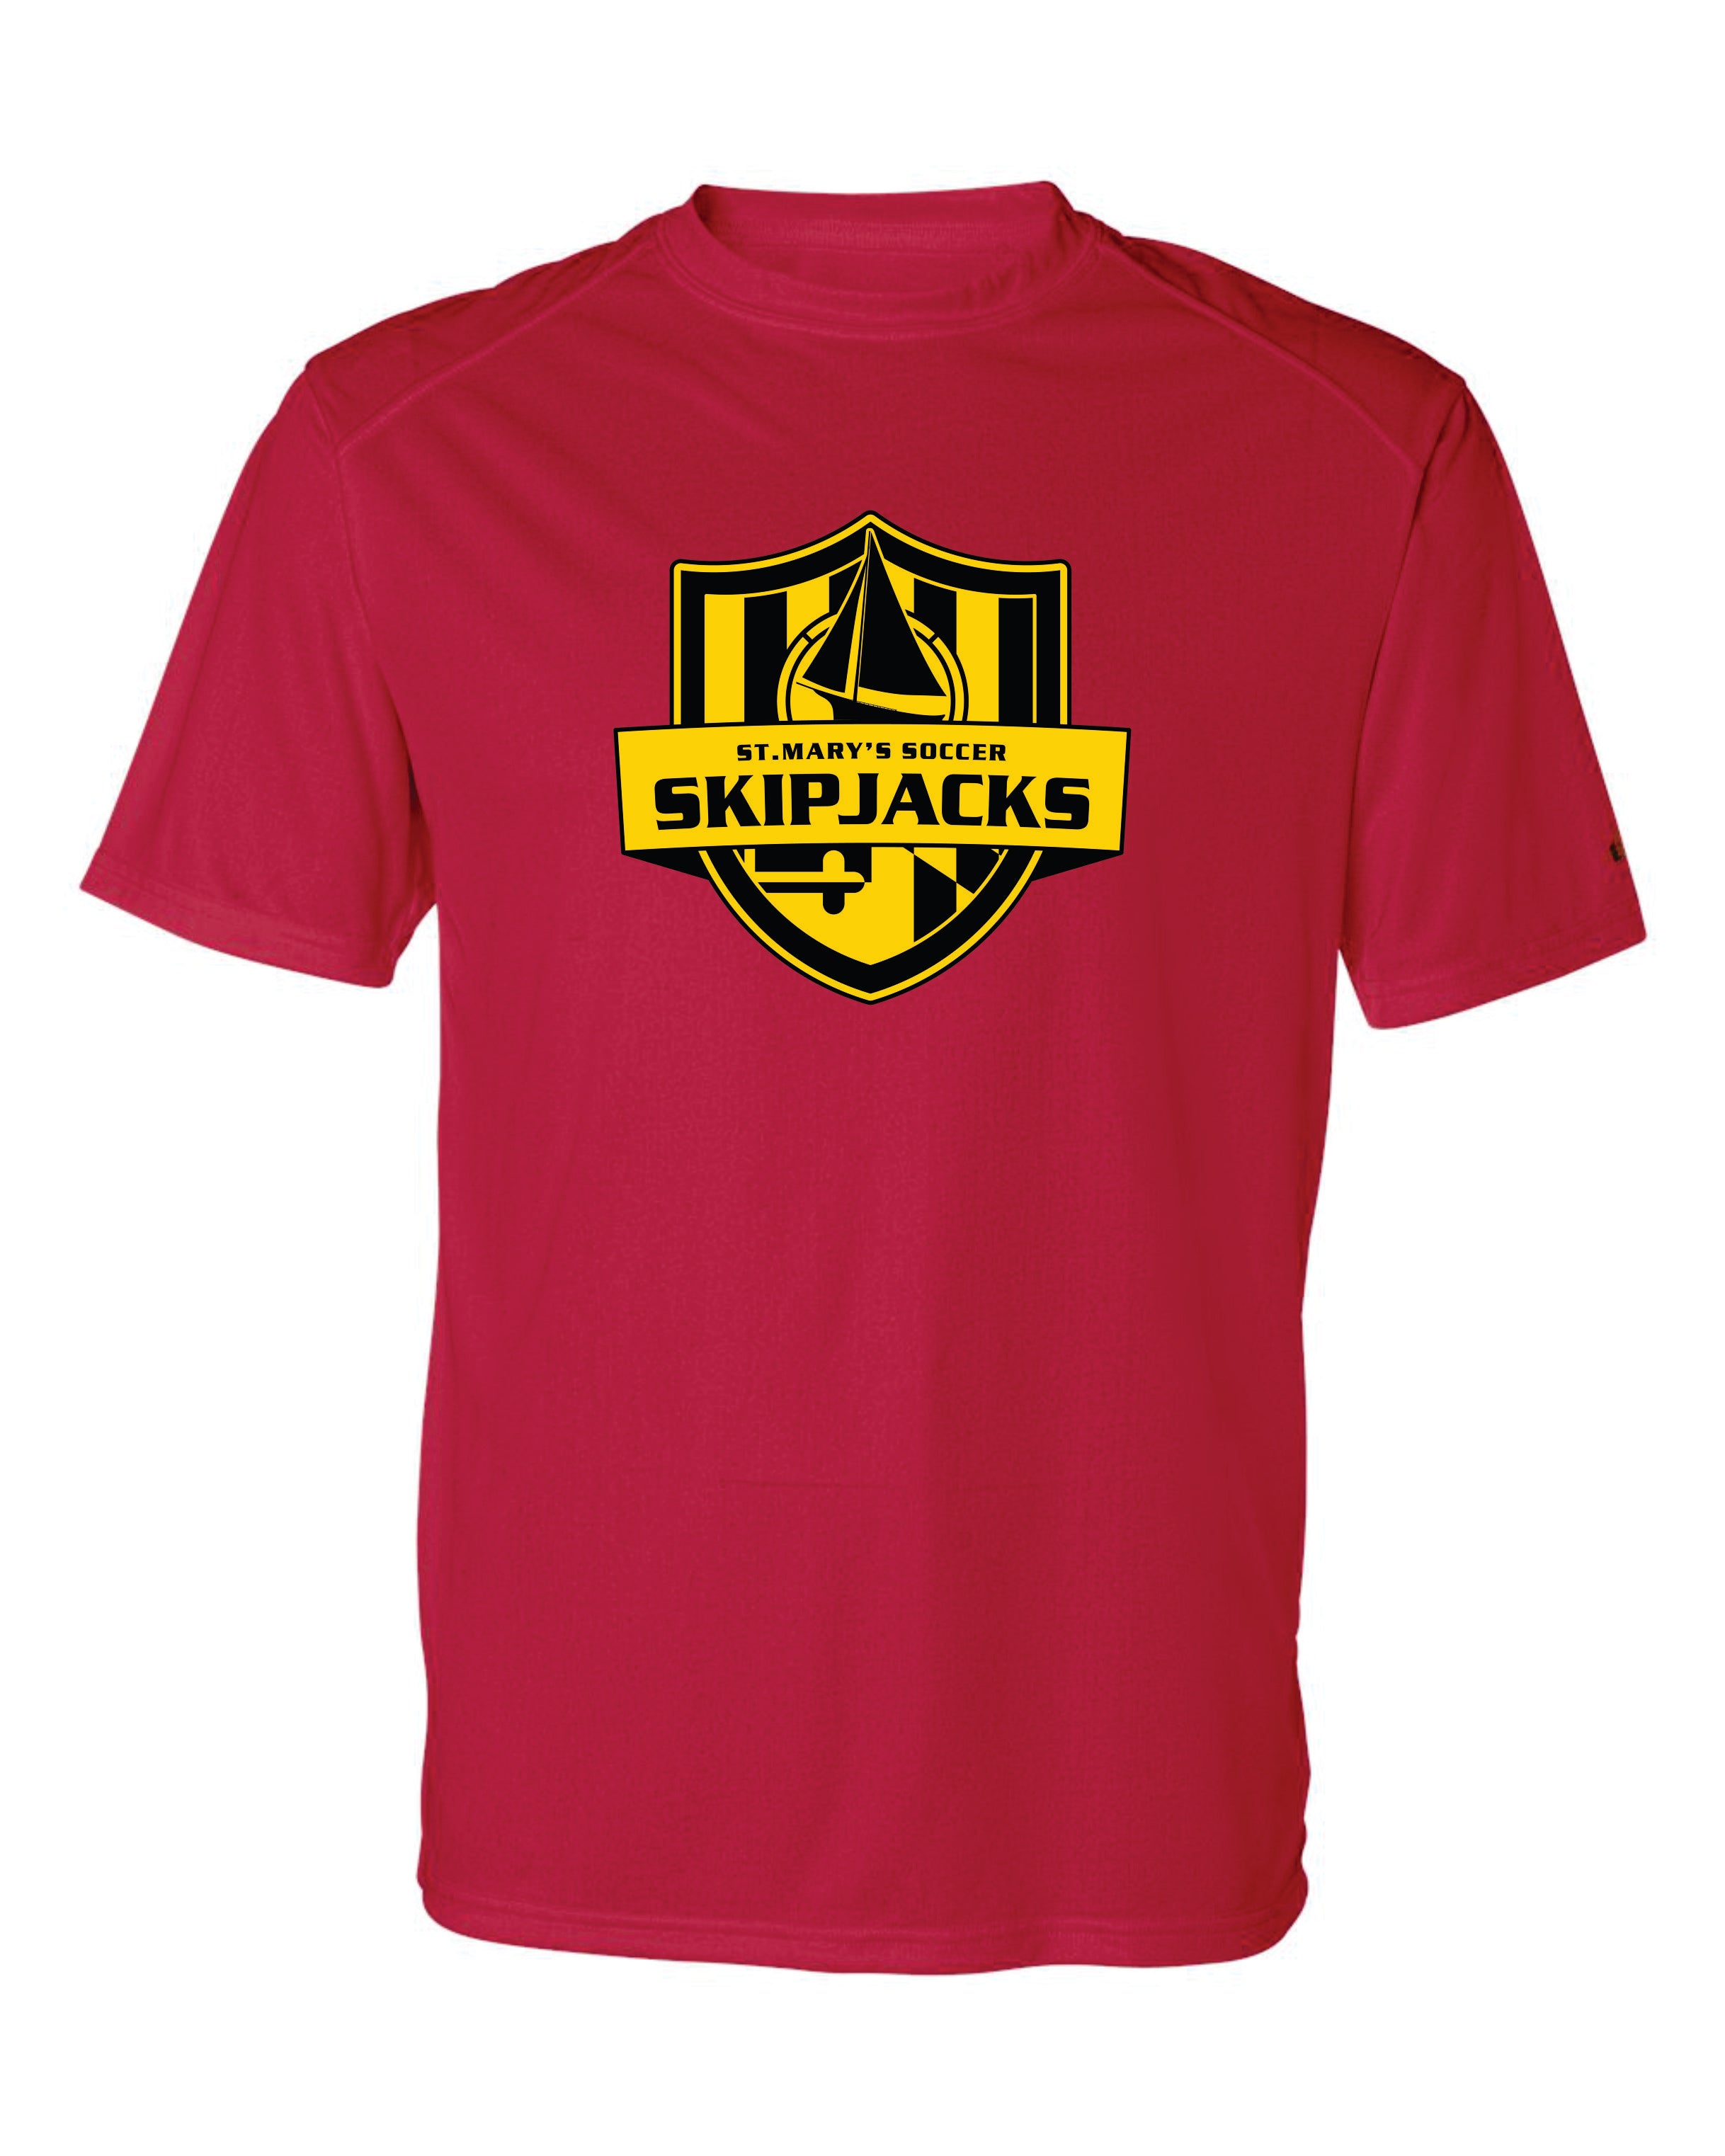 Skipjacks Short Sleeve Dri Fit T shirt - Youth